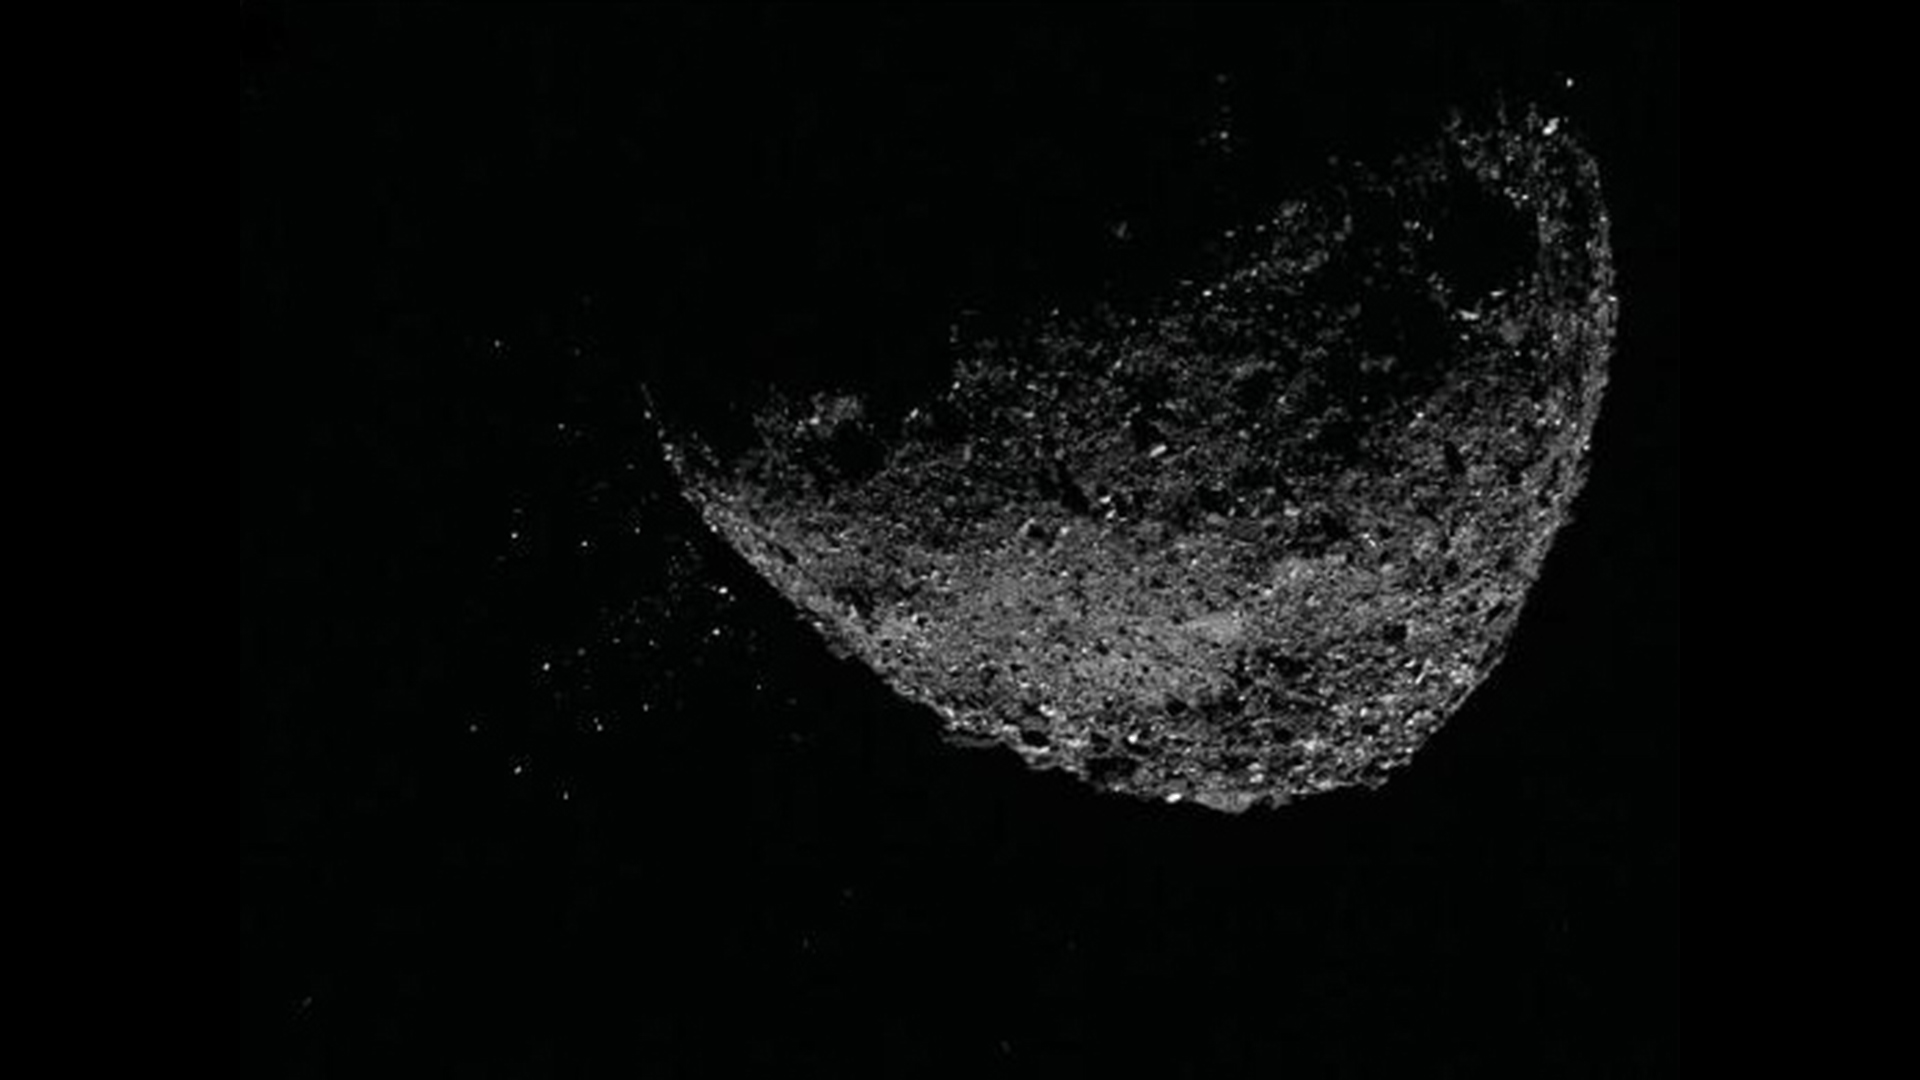 Этот вид астероида Бенну, выбрасывающего частицы со своей поверхности 6 января 2019 года, был создан путем объединения двух изображений, полученных камерой NavCam 1 на борту космического корабля НАСА OSIRIS-REx: изображения с короткой выдержкой, на котором четко виден астероид, и длинного изображения. -изображение с экспозицией (пять секунд), на котором четко видны частицы.